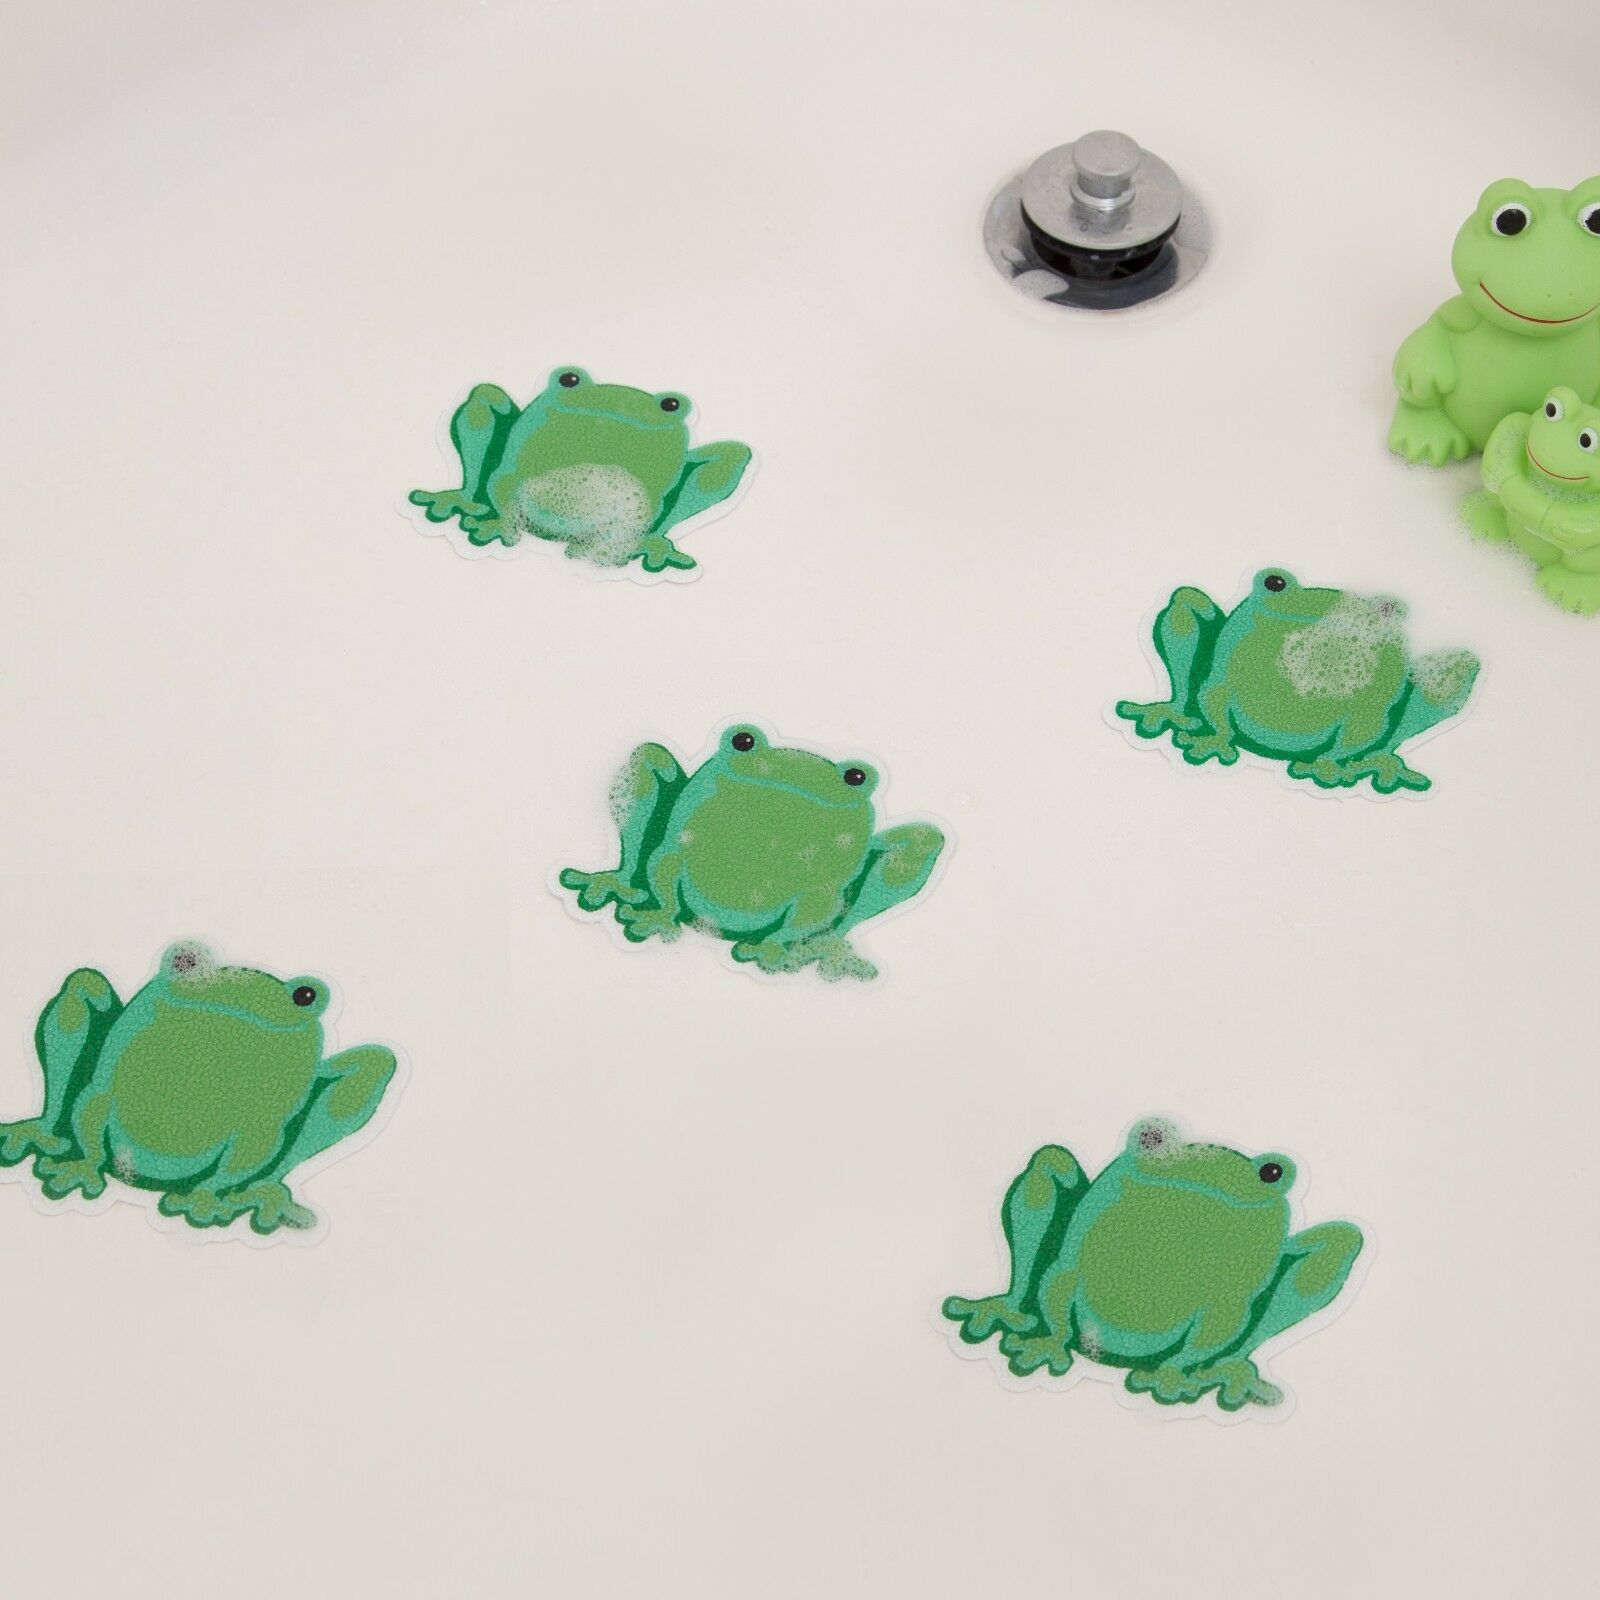 Bathtub Shower Stickers - Safety Decals Treads Non Slip Frogs Applique Anti-skid